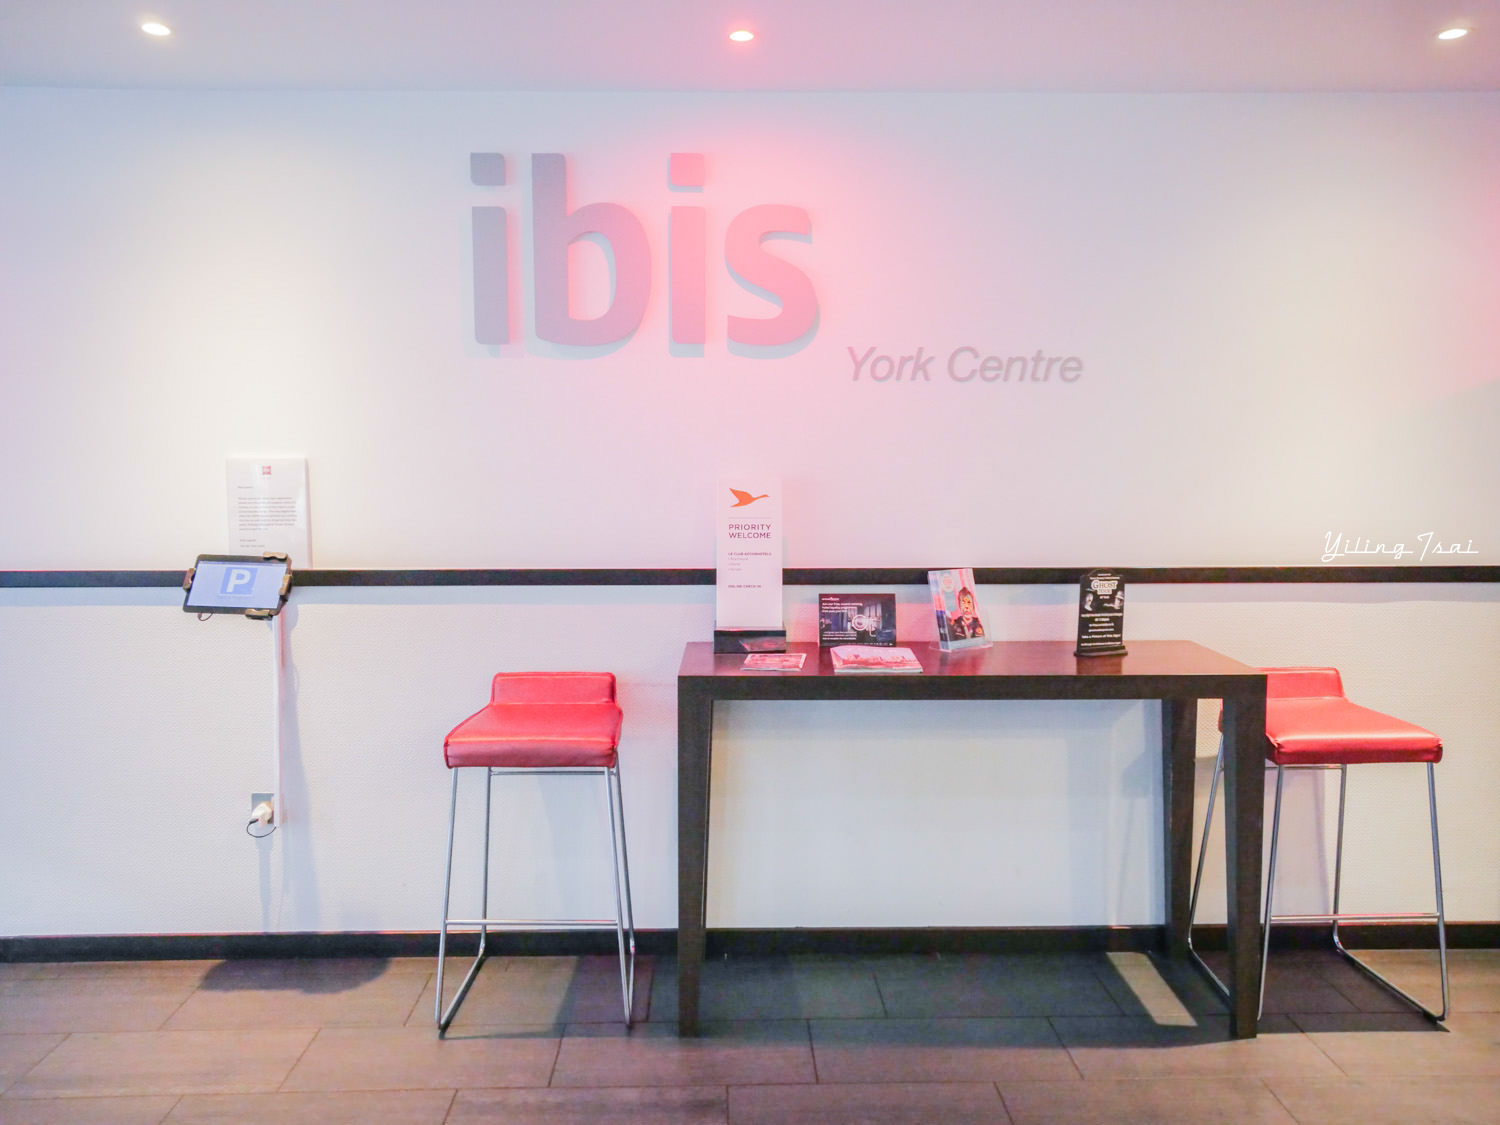 英國約克住宿推薦 ibis York Centre 經典連鎖平價約克飯店